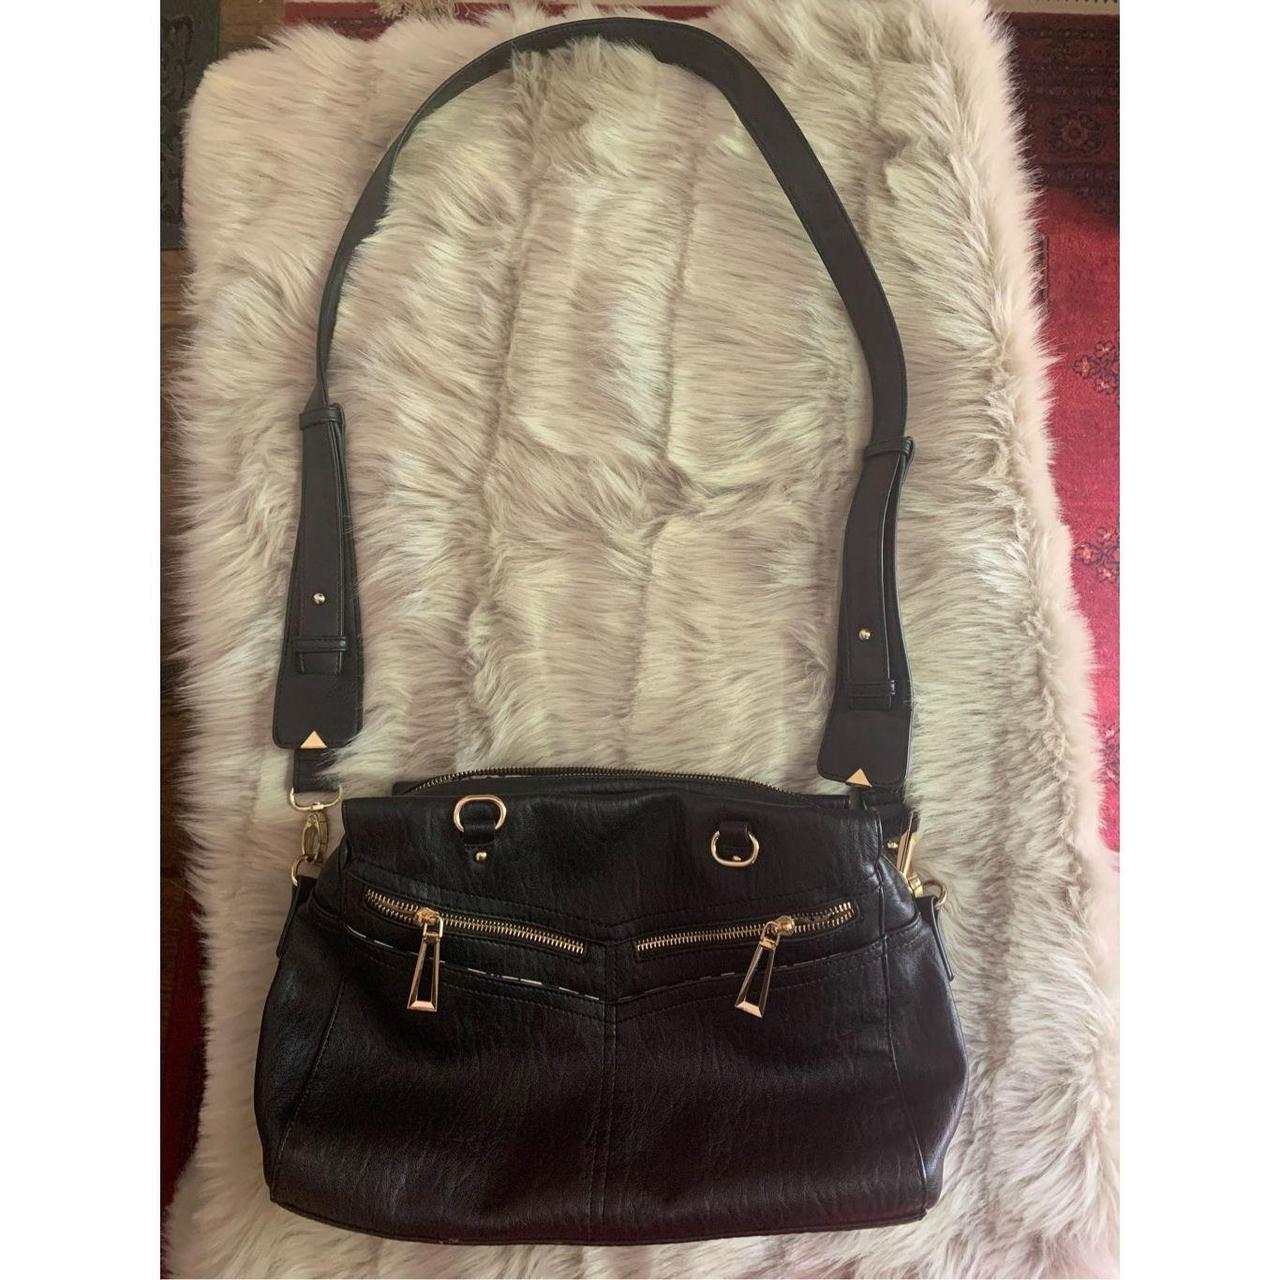 Jessica Simpson Large Purse Satchel Black Faux Fur & Leather Bag 18x14 |  eBay